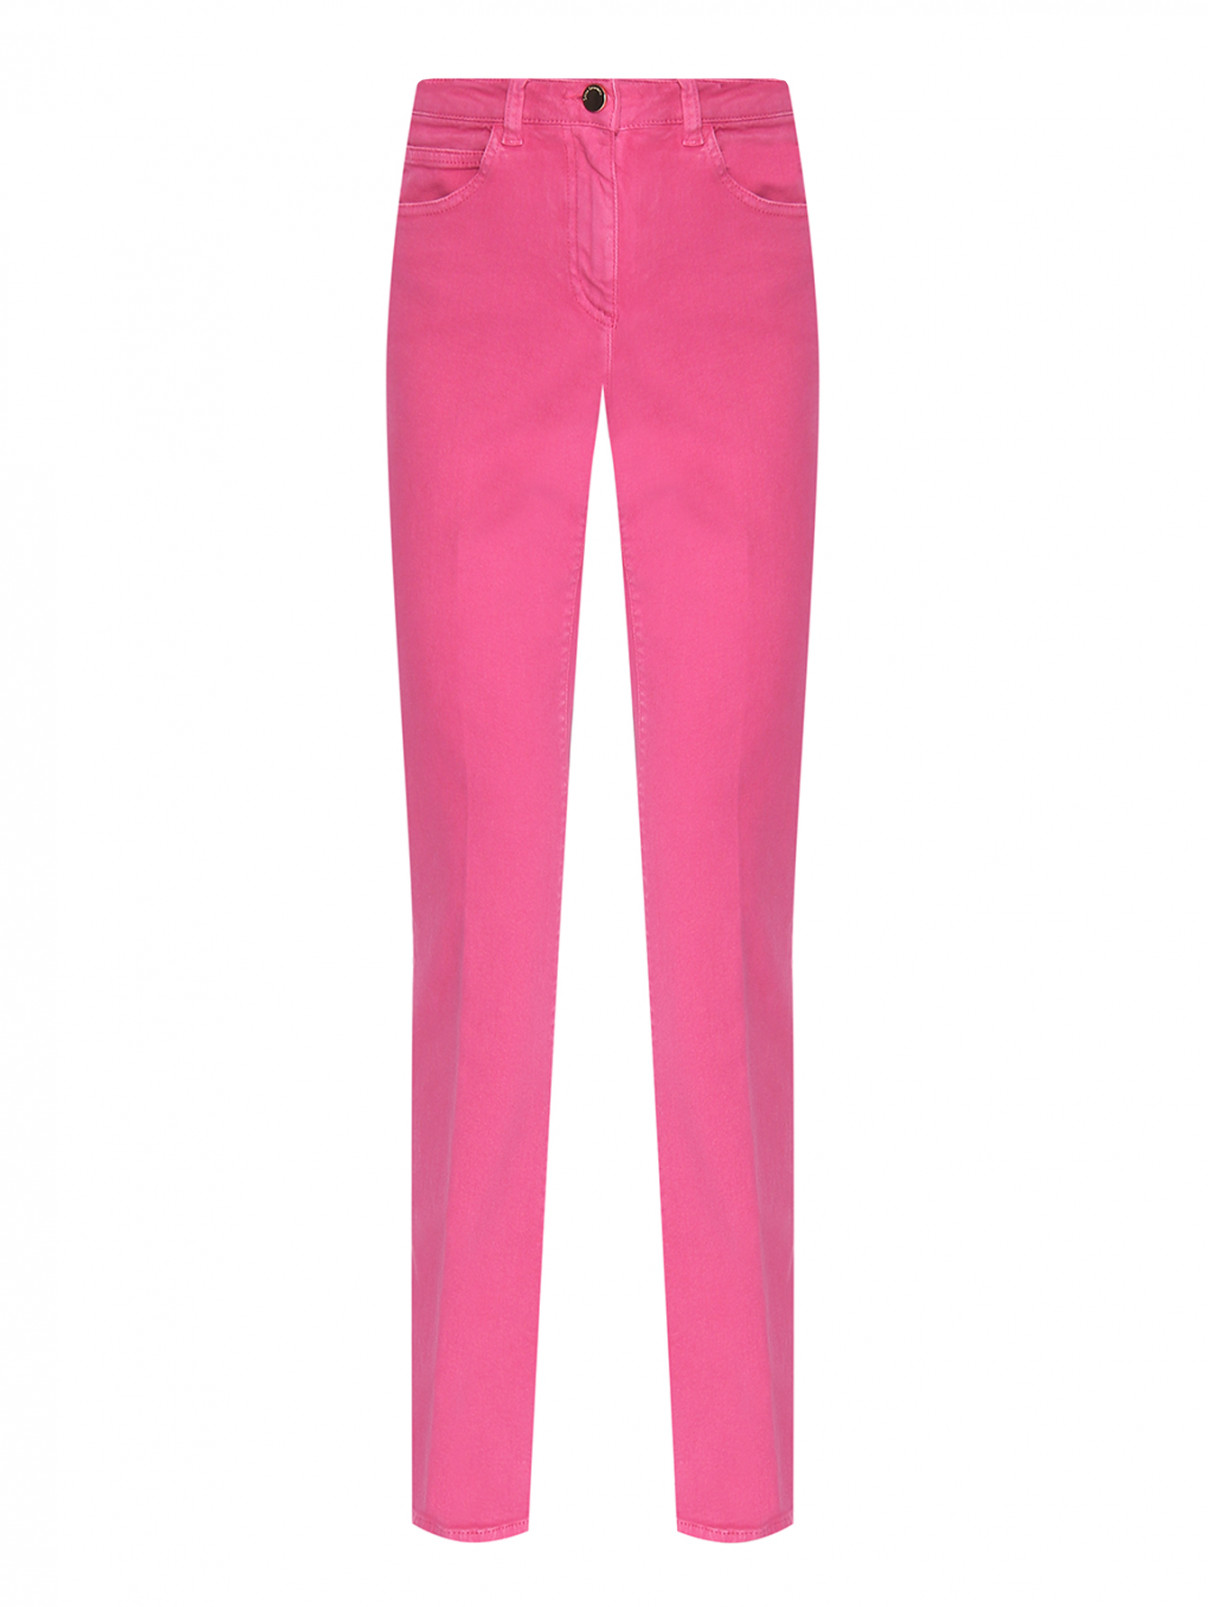 Однотонные джинсы с карманами Luisa Spagnoli  –  Общий вид  – Цвет:  Розовый